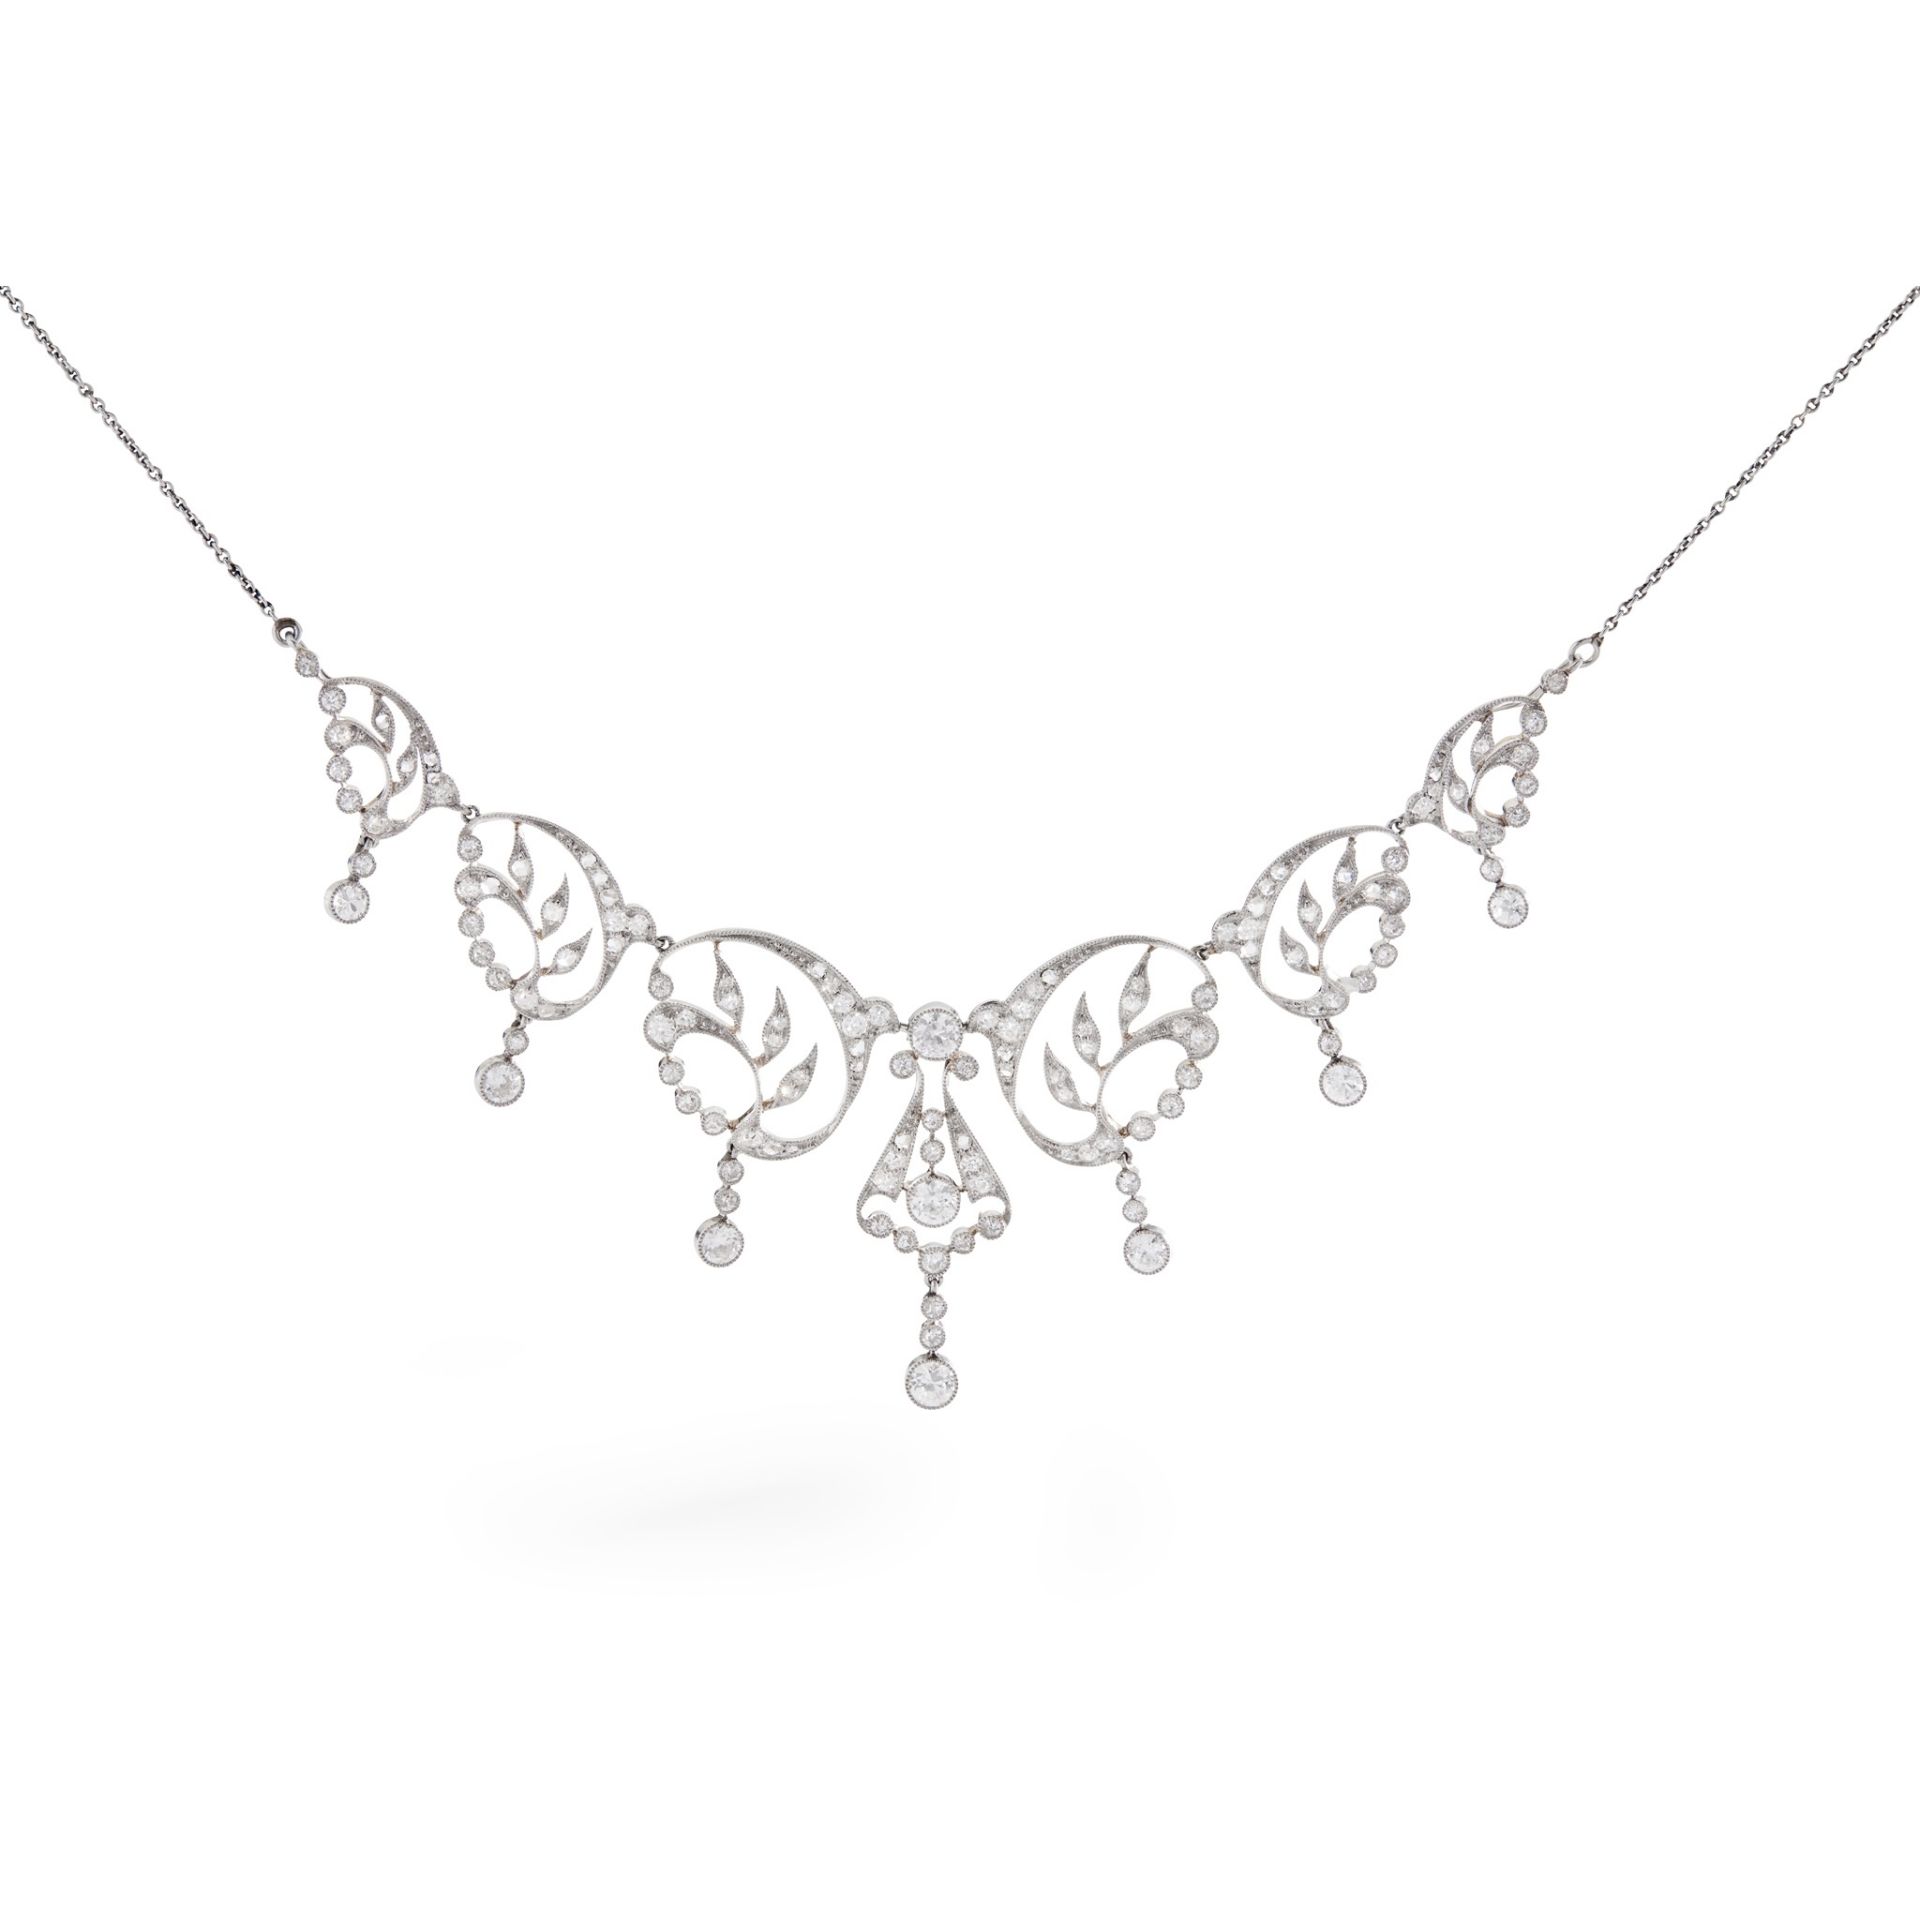 A Belle Époque diamond necklace